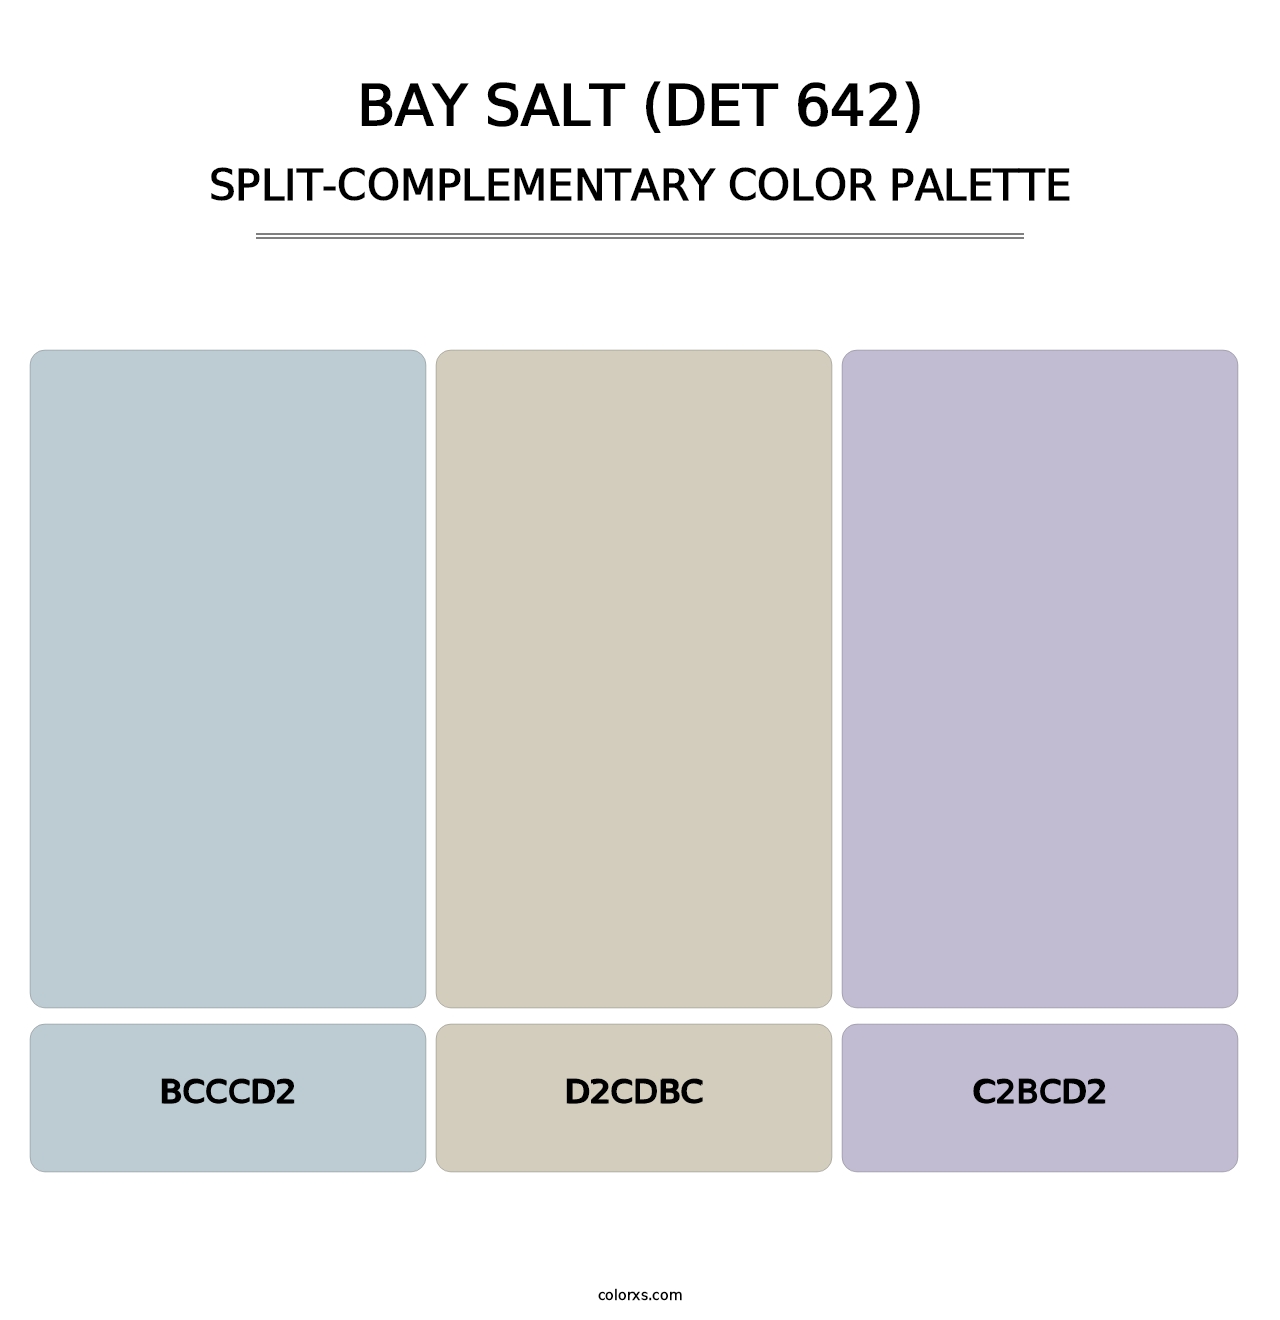 Bay Salt (DET 642) - Split-Complementary Color Palette